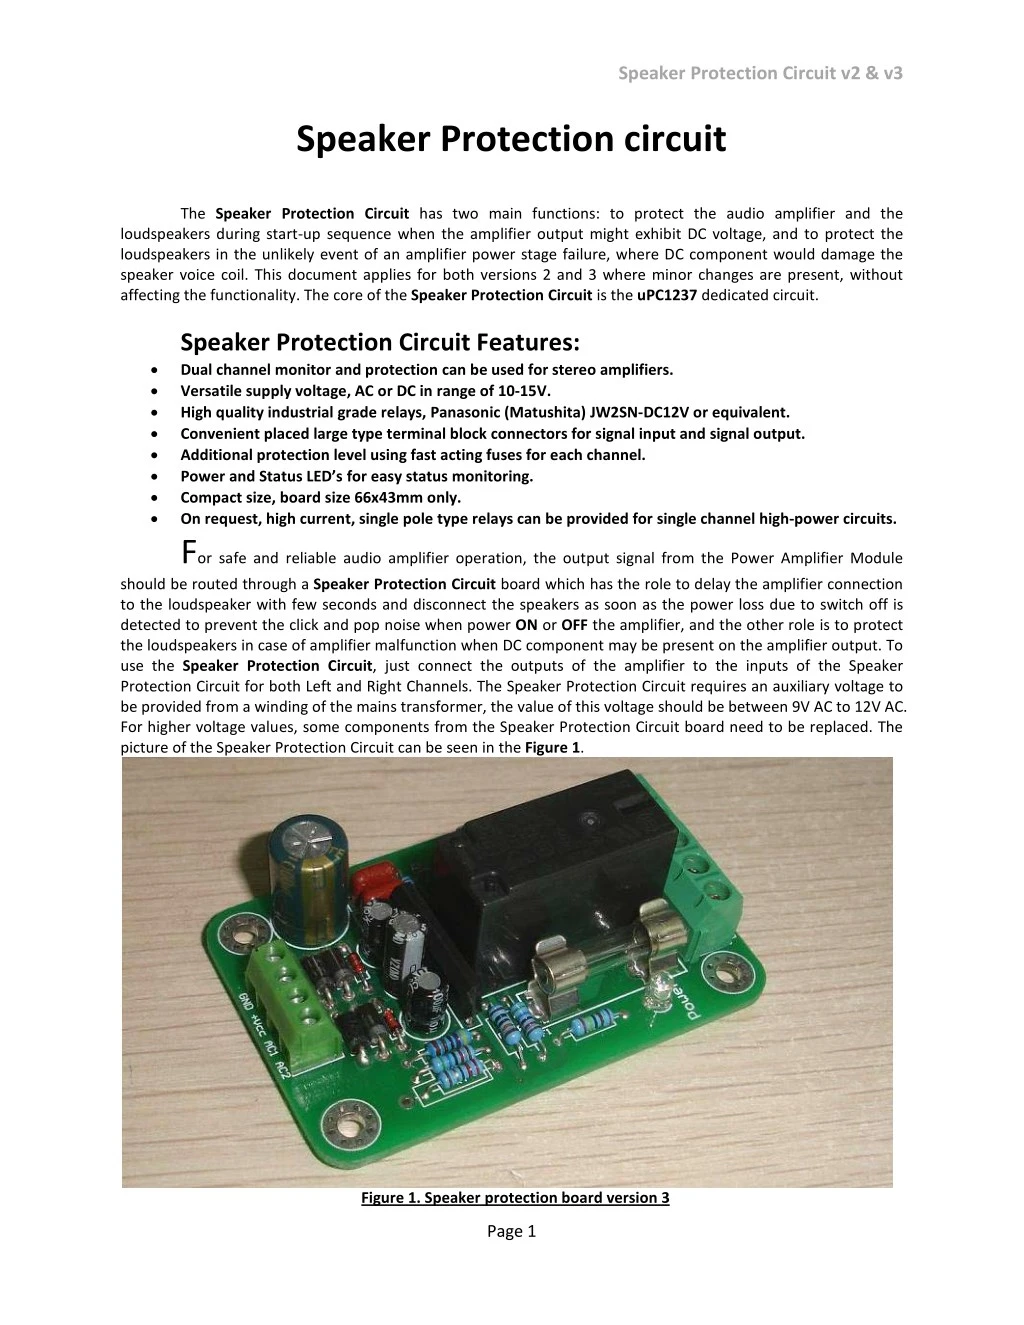 speaker protection circuit v2 v3